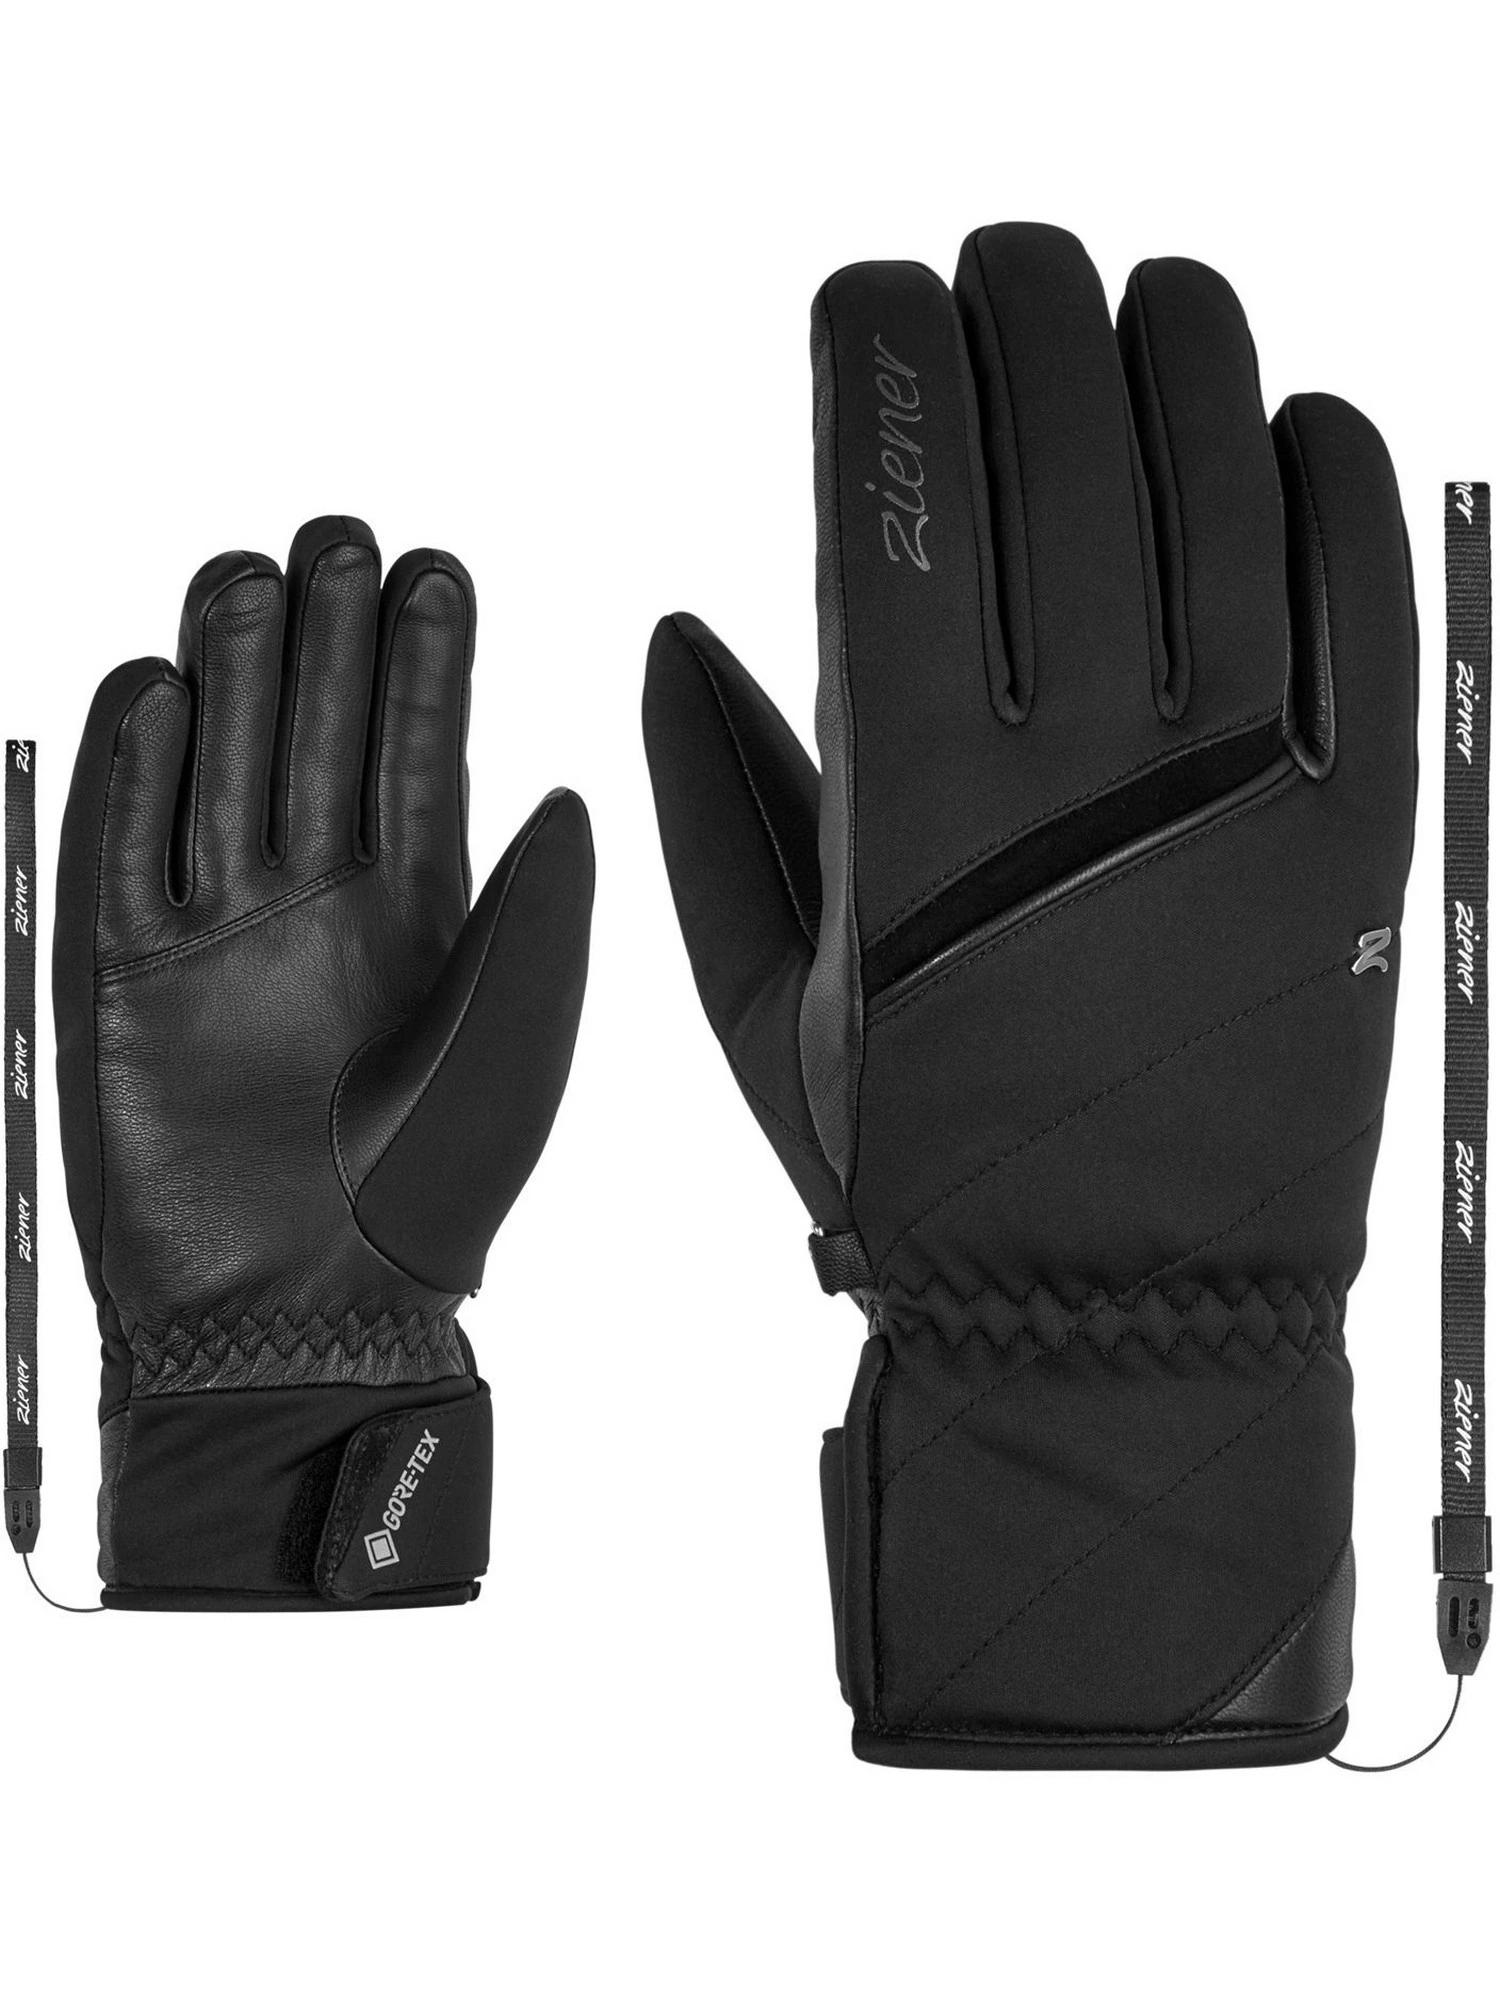 Ziener Kiyuna GTX PR lady glove